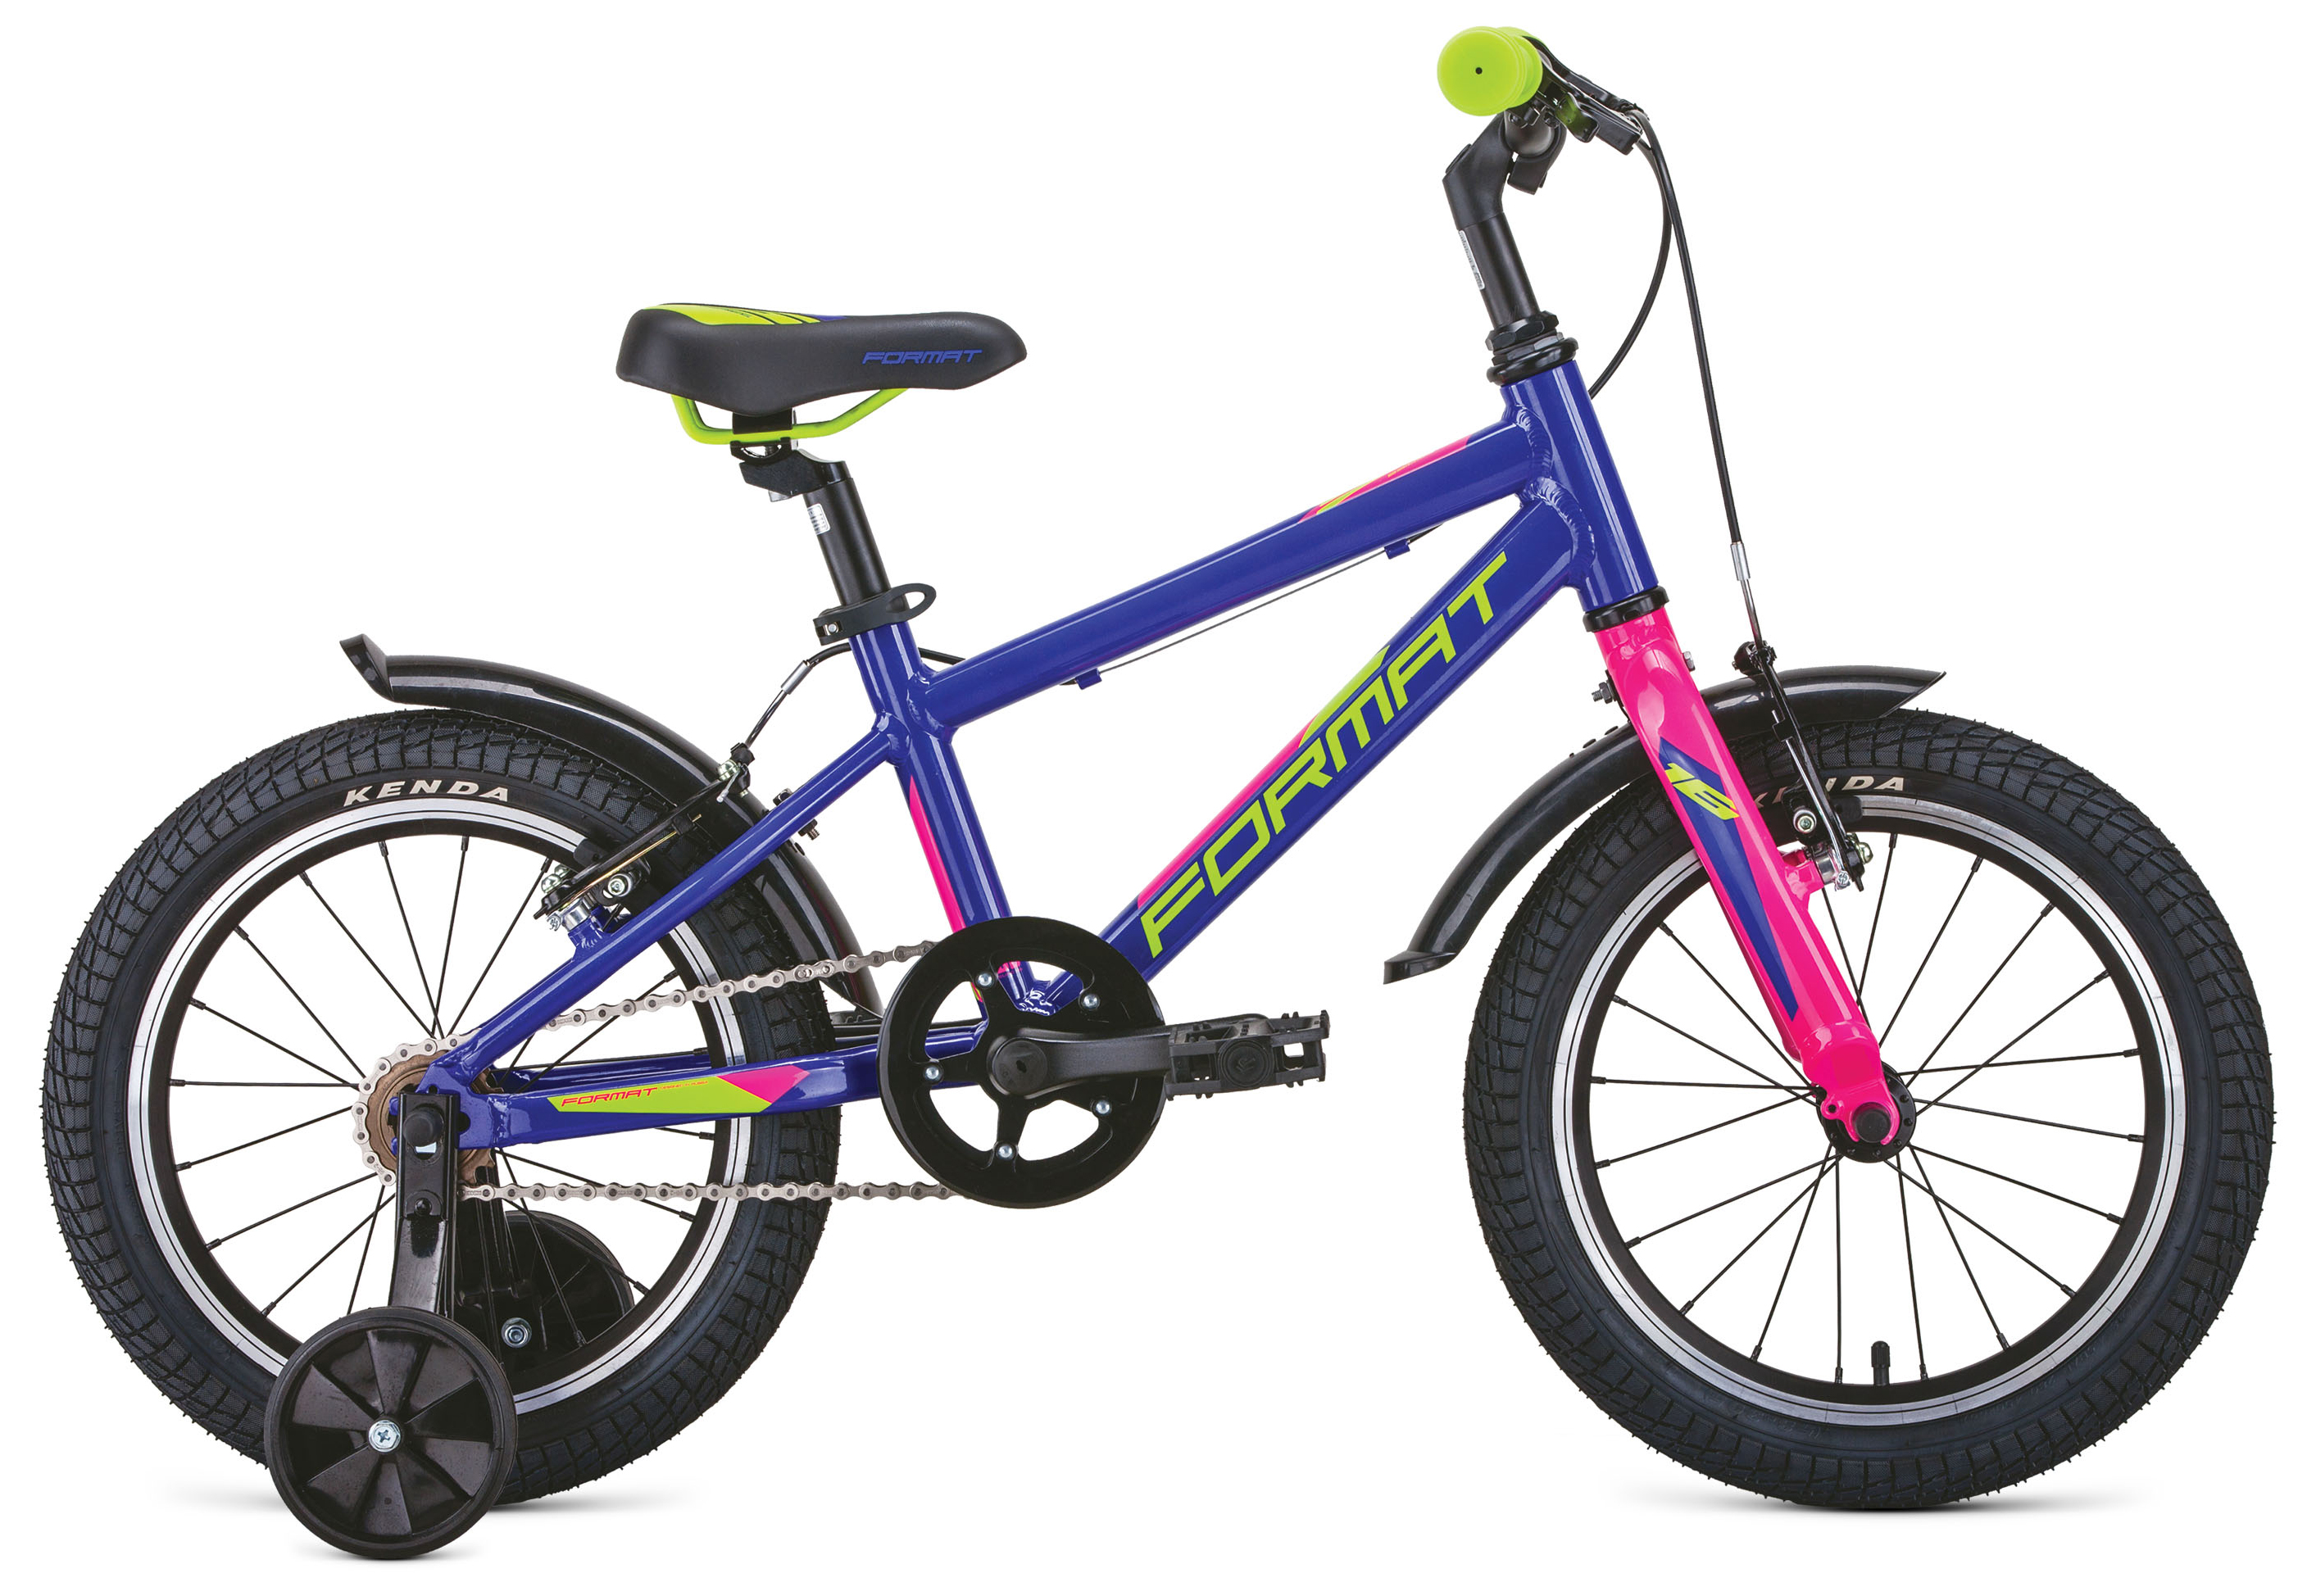  Отзывы о Детском велосипеде Format Kids 16 2020